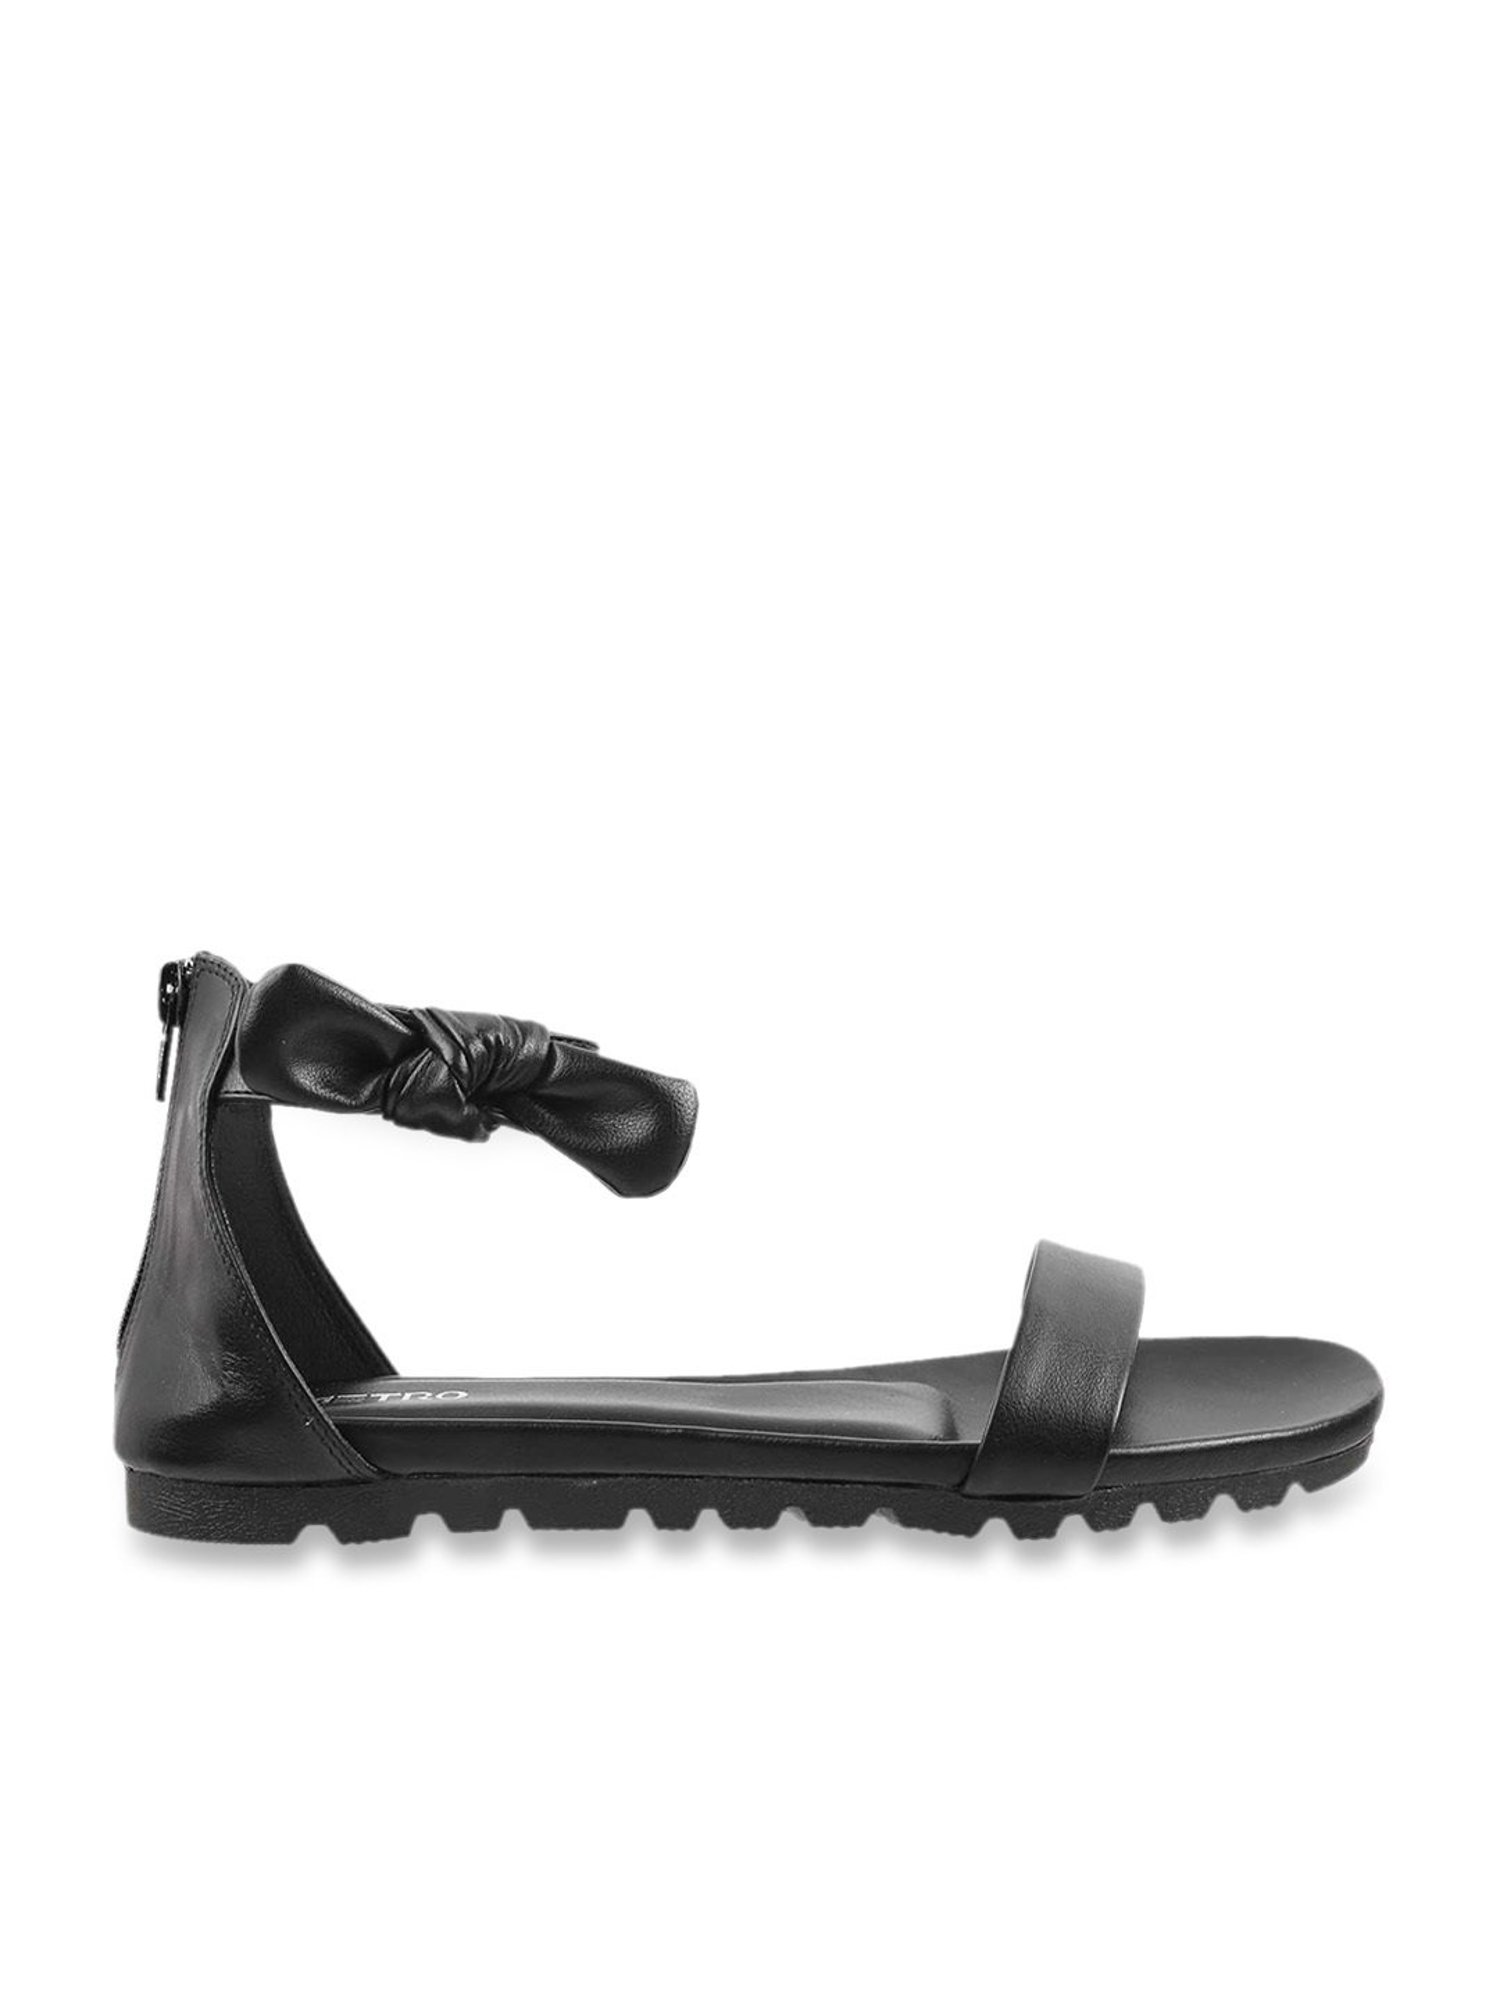 Schutz Aurora Leather Ankle Strap Dress Sandals | Dillard's